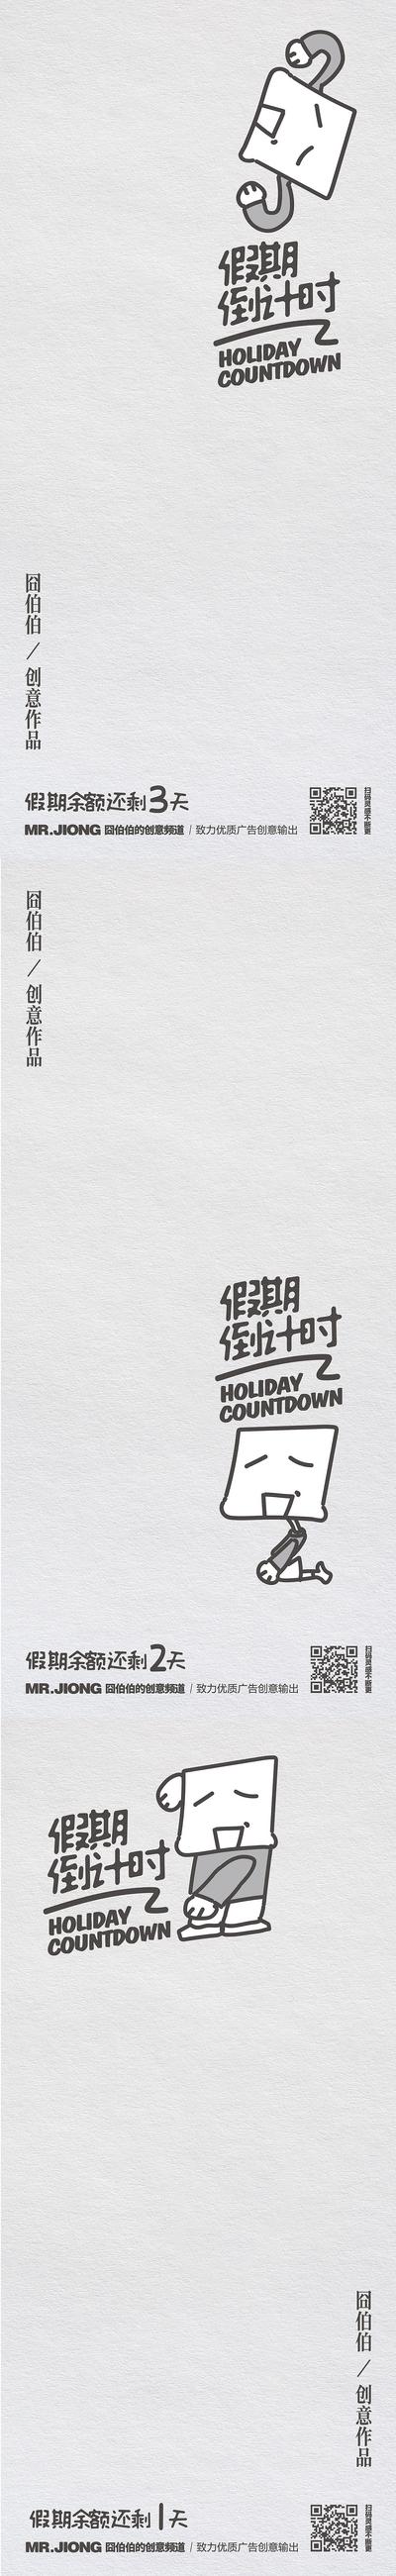 南门网 广告 海报 创意 倒计时 节日 假期 插画 卡通 系列